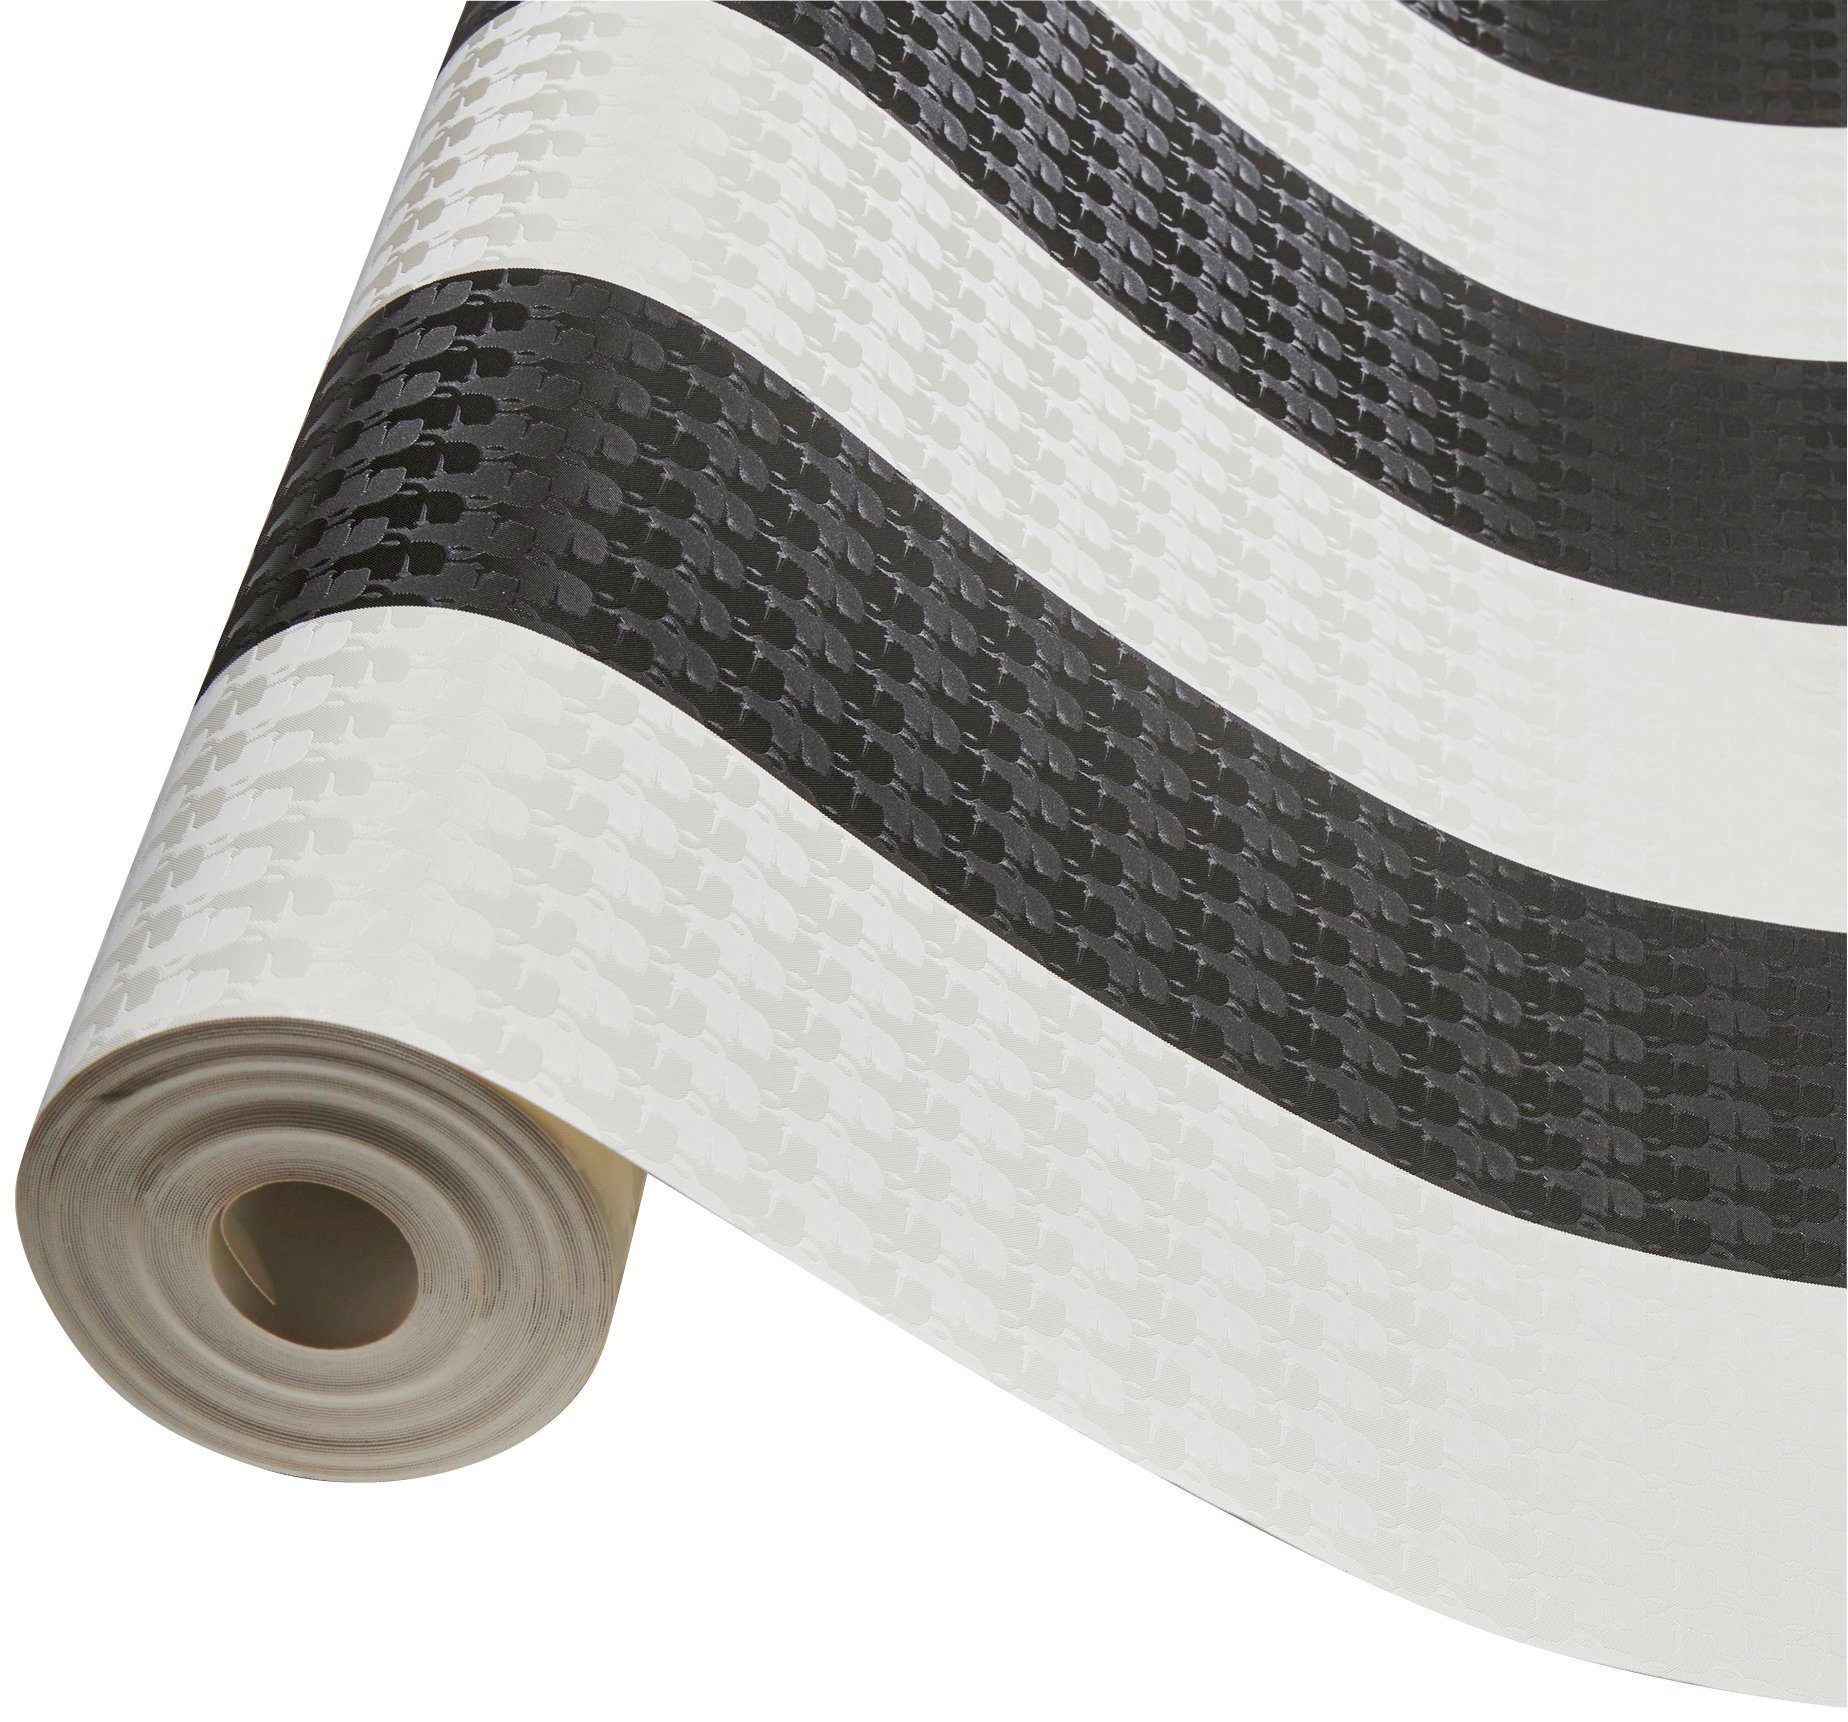 Designer Paper A.S. gestreift, Stripes, Tapete Création Streifen, Vliestapete Architects Streifentapete schwarz/weiß Karl Lagerfeld